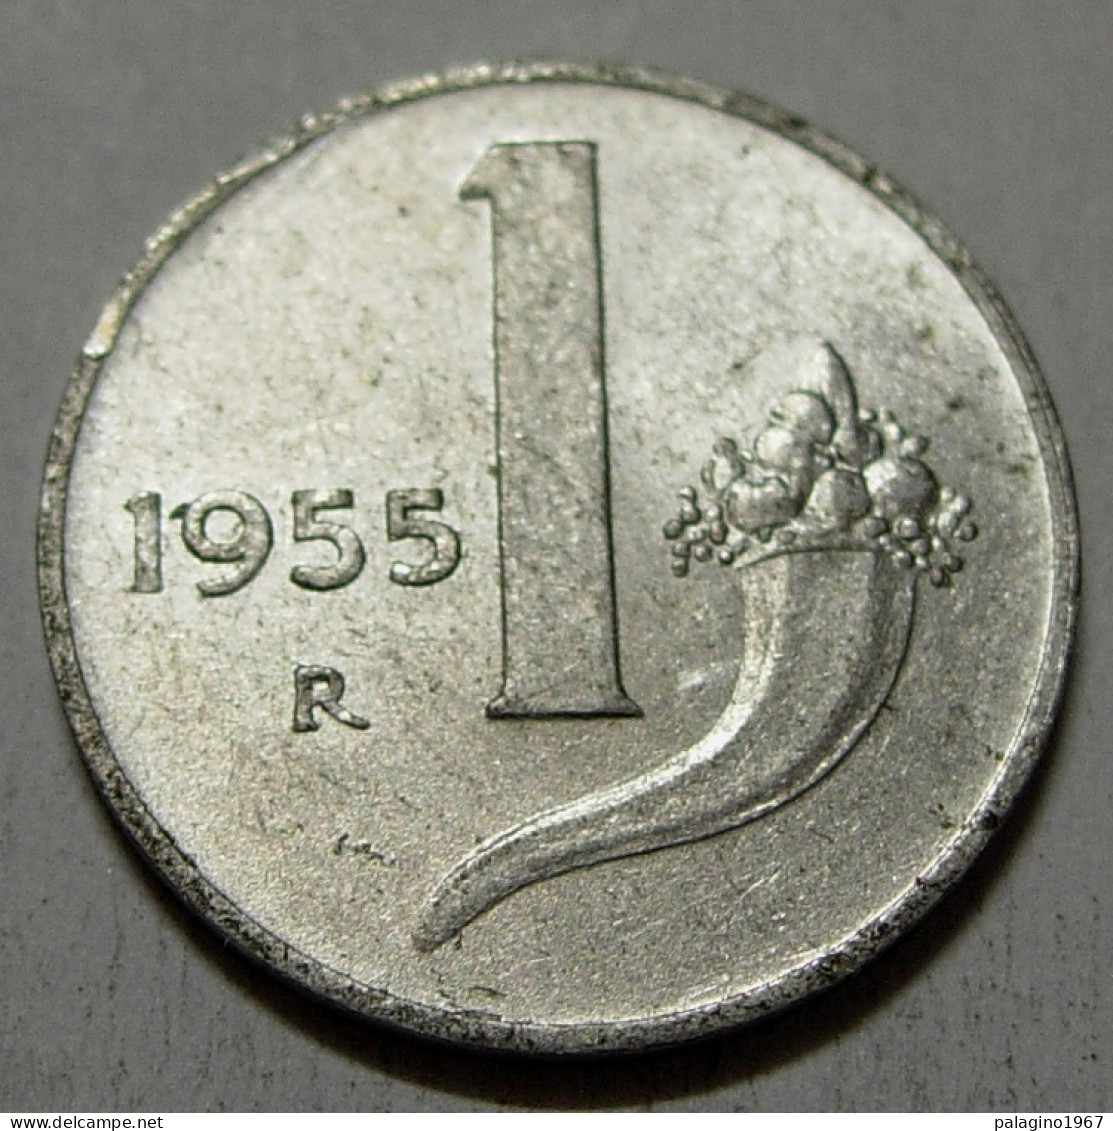 REPUBBLICA ITALIANA 1 Lira Cornucopia 1955 QBB  - 1 Lire